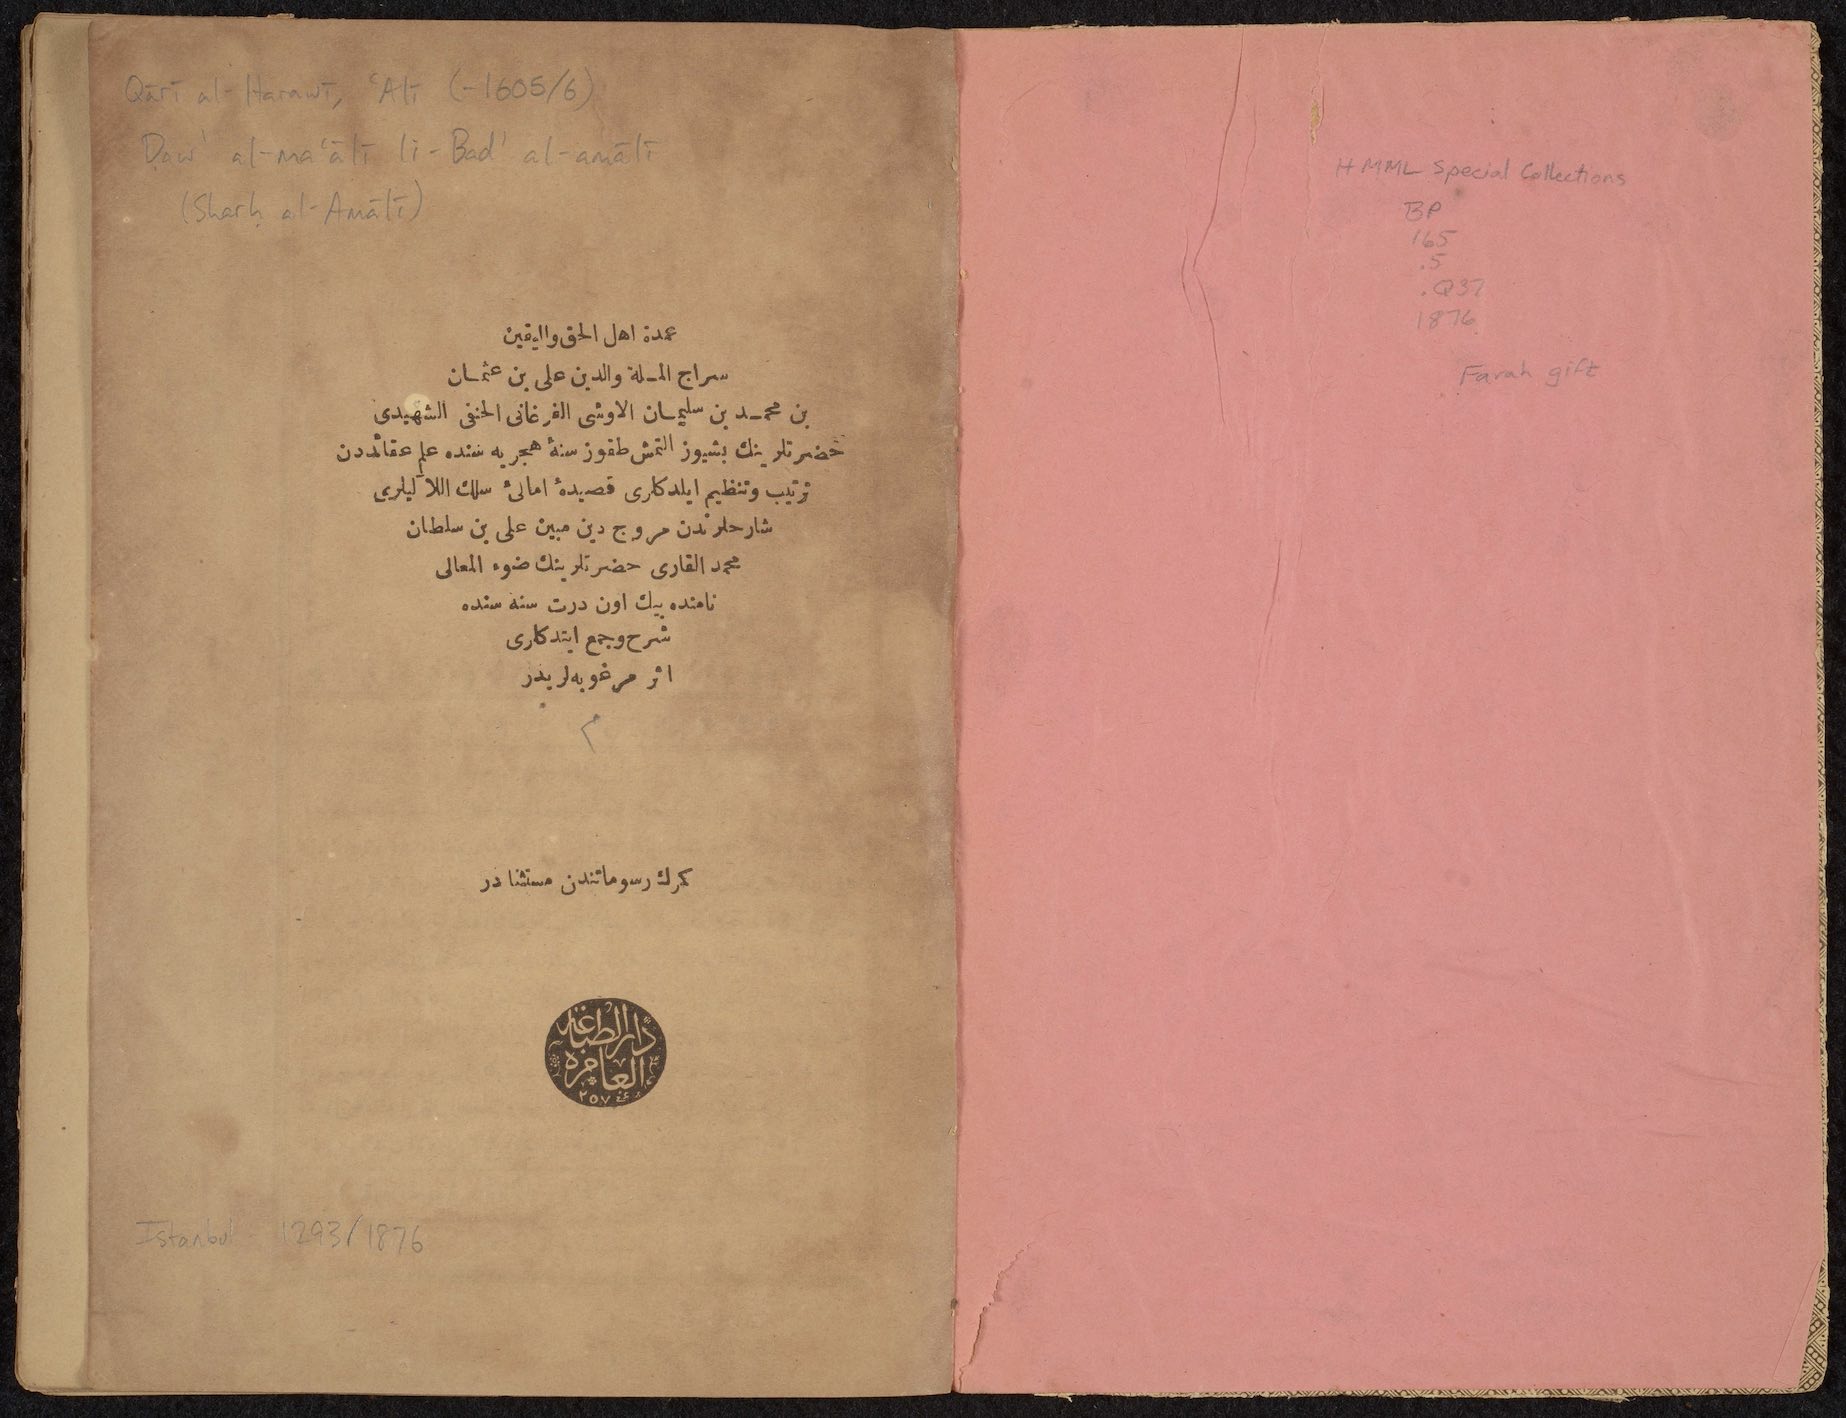 Poem on theology by ʻAlī ibn ʻUthmān al-Ūshī; commentary by ʻAlī ibn Sulṭān Muḥammad al-Qārī al-Harawī [Arabic/Ottoman Turkish]<br>Istanbul, 1876